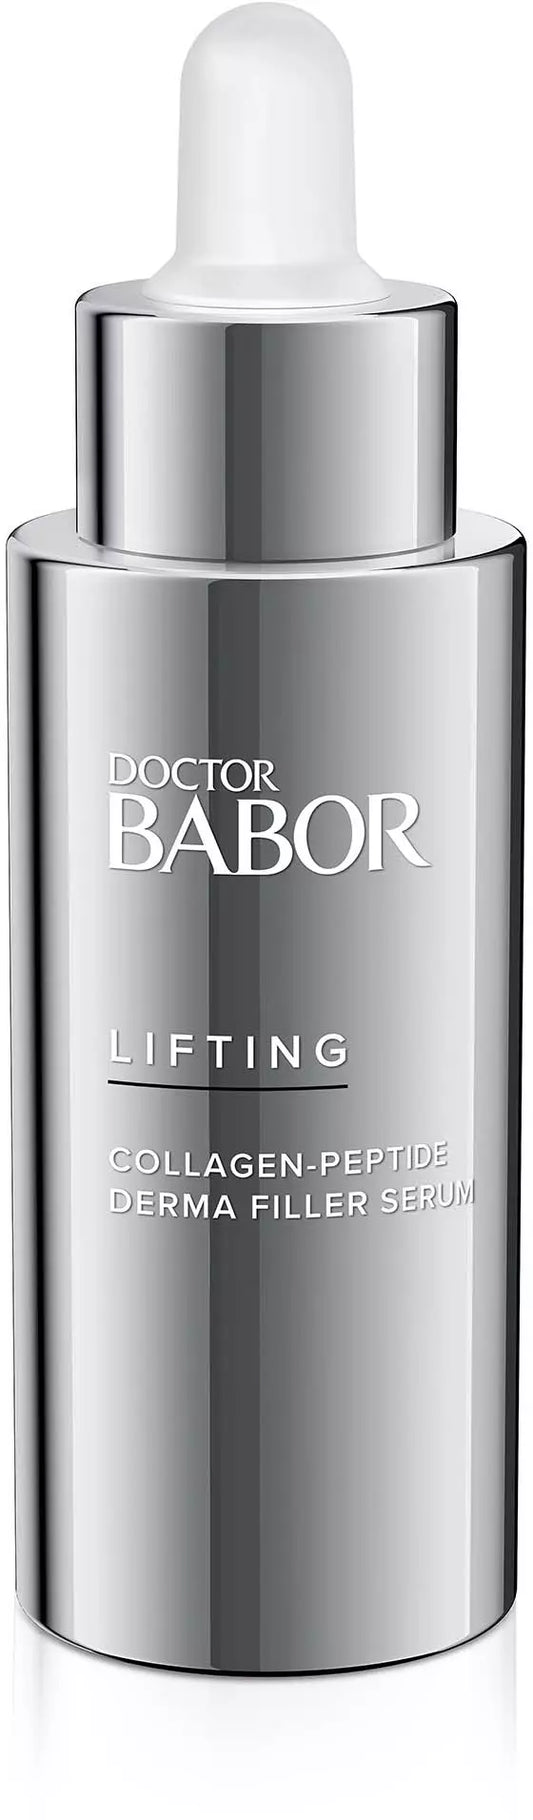 Dr Babor Collagen-Peptide Derma Filler Serum